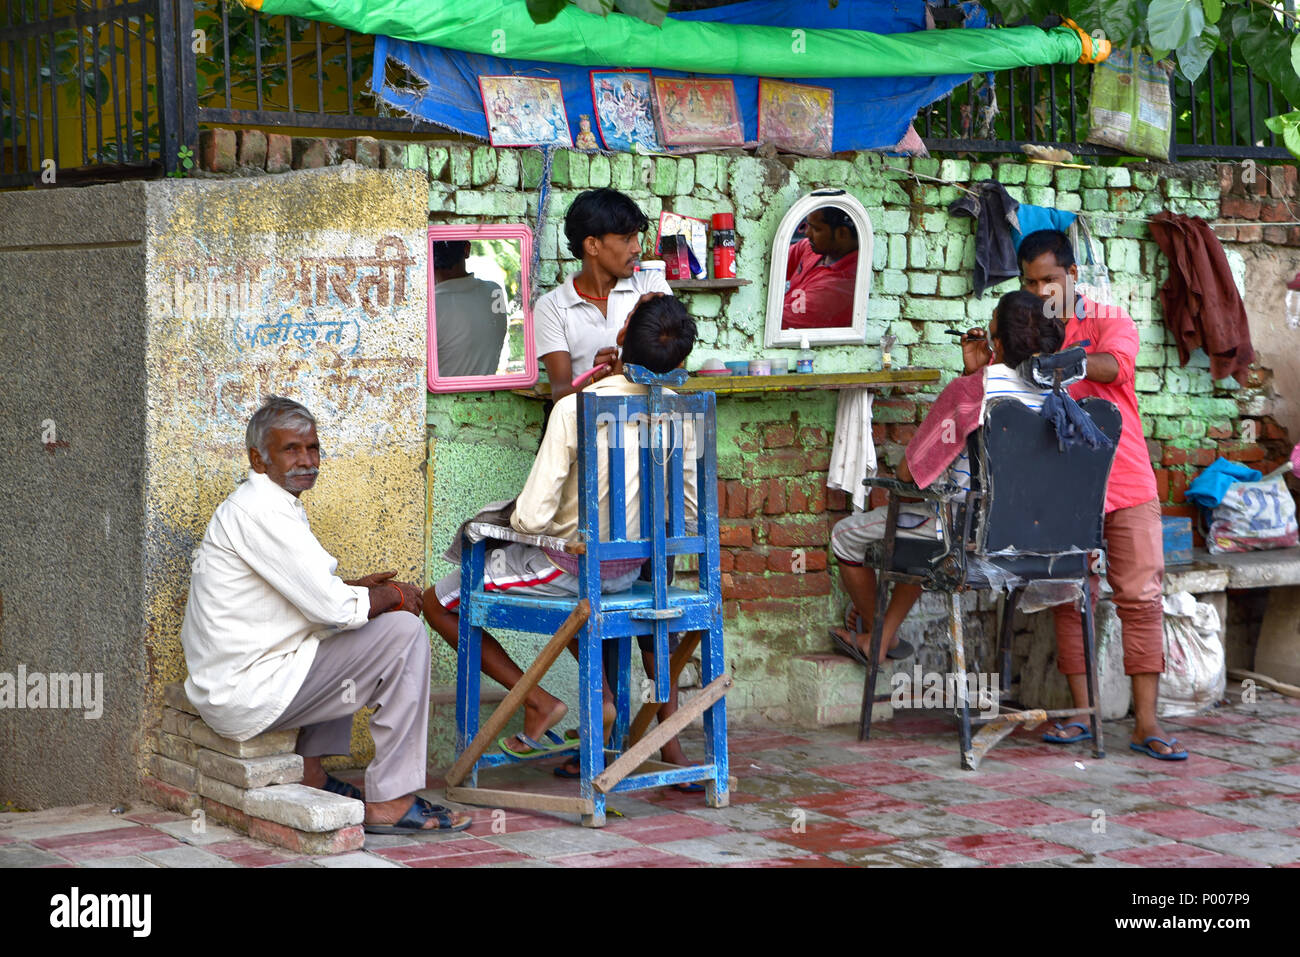 Outdoor Salon in New Delhi, India Stock Photo